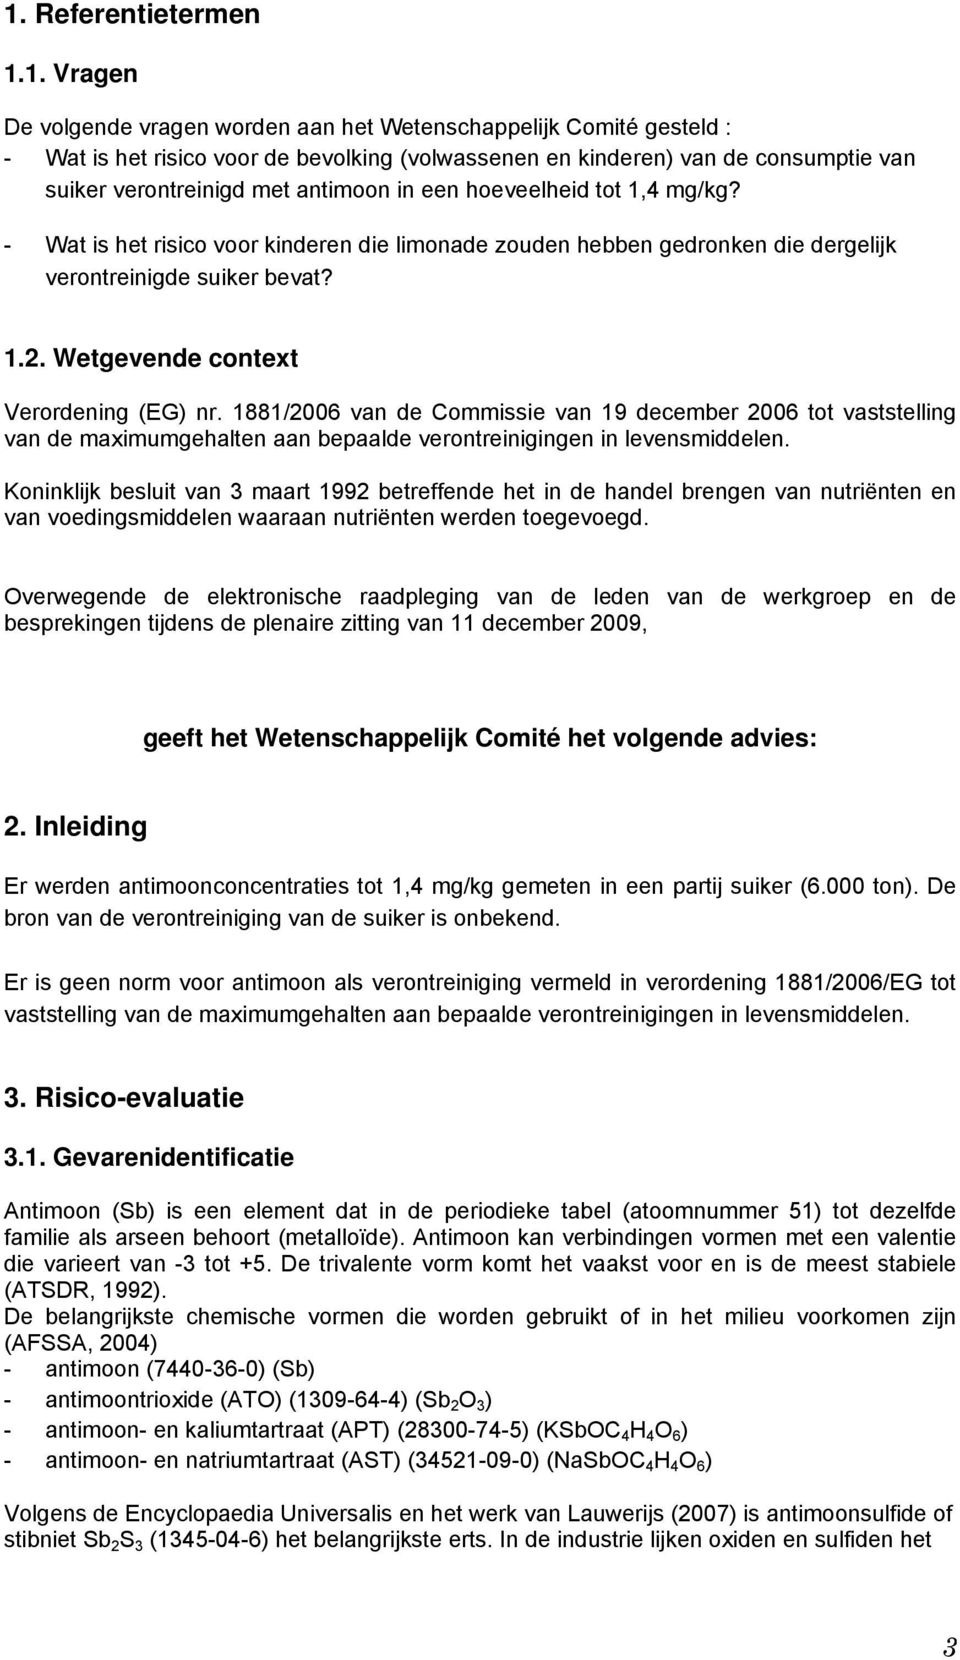 Wetgevende context Verordening (EG) nr. 1881/2006 van de Commissie van 19 december 2006 tot vaststelling van de maximumgehalten aan bepaalde verontreinigingen in levensmiddelen.